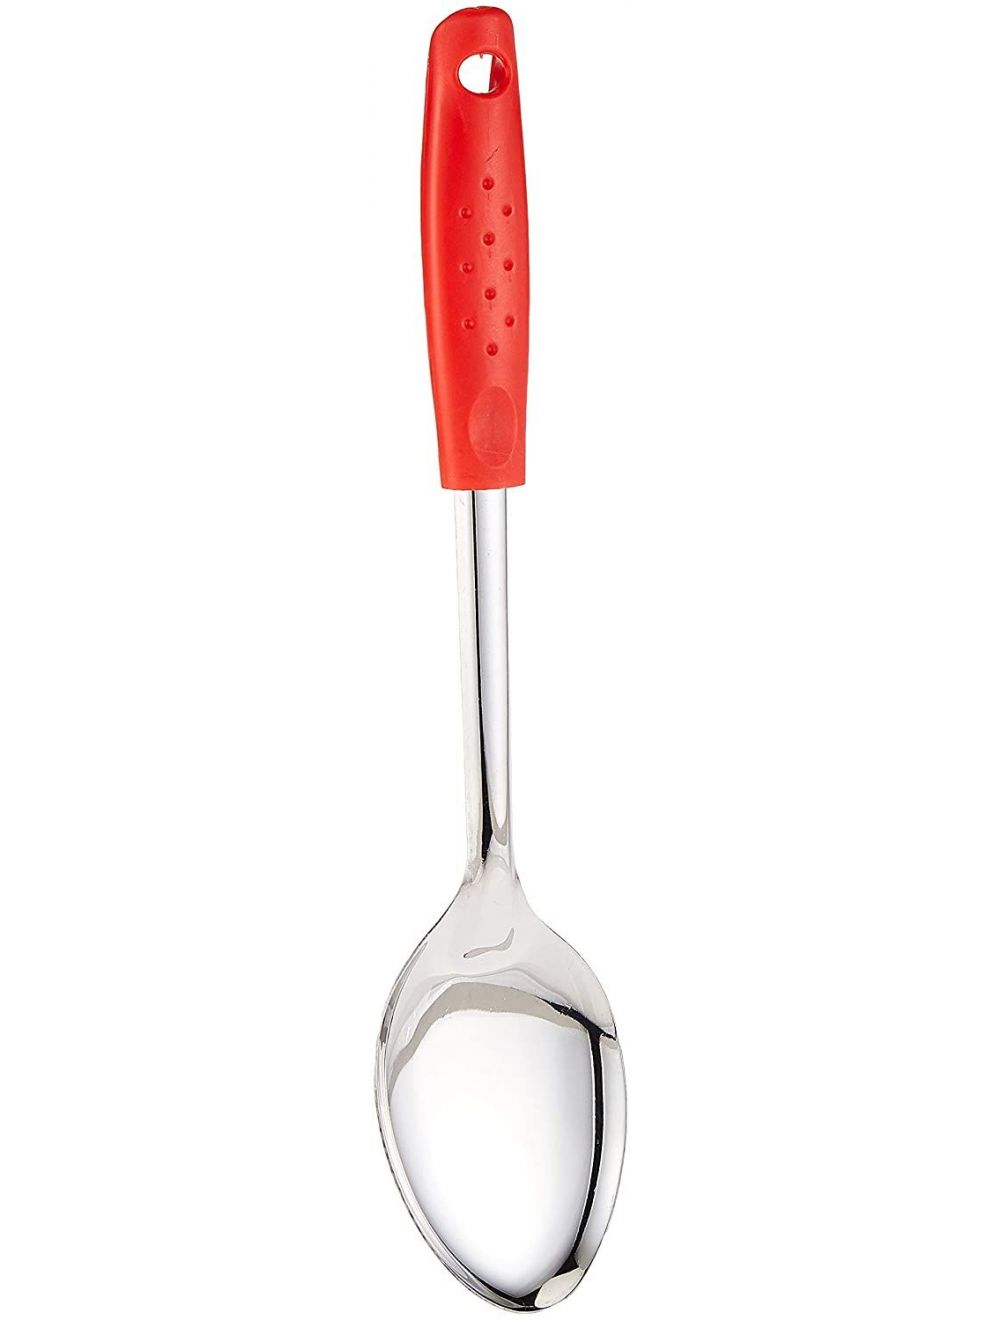 Raj 7 cm Red Handle Basting Spoon-RPHB01